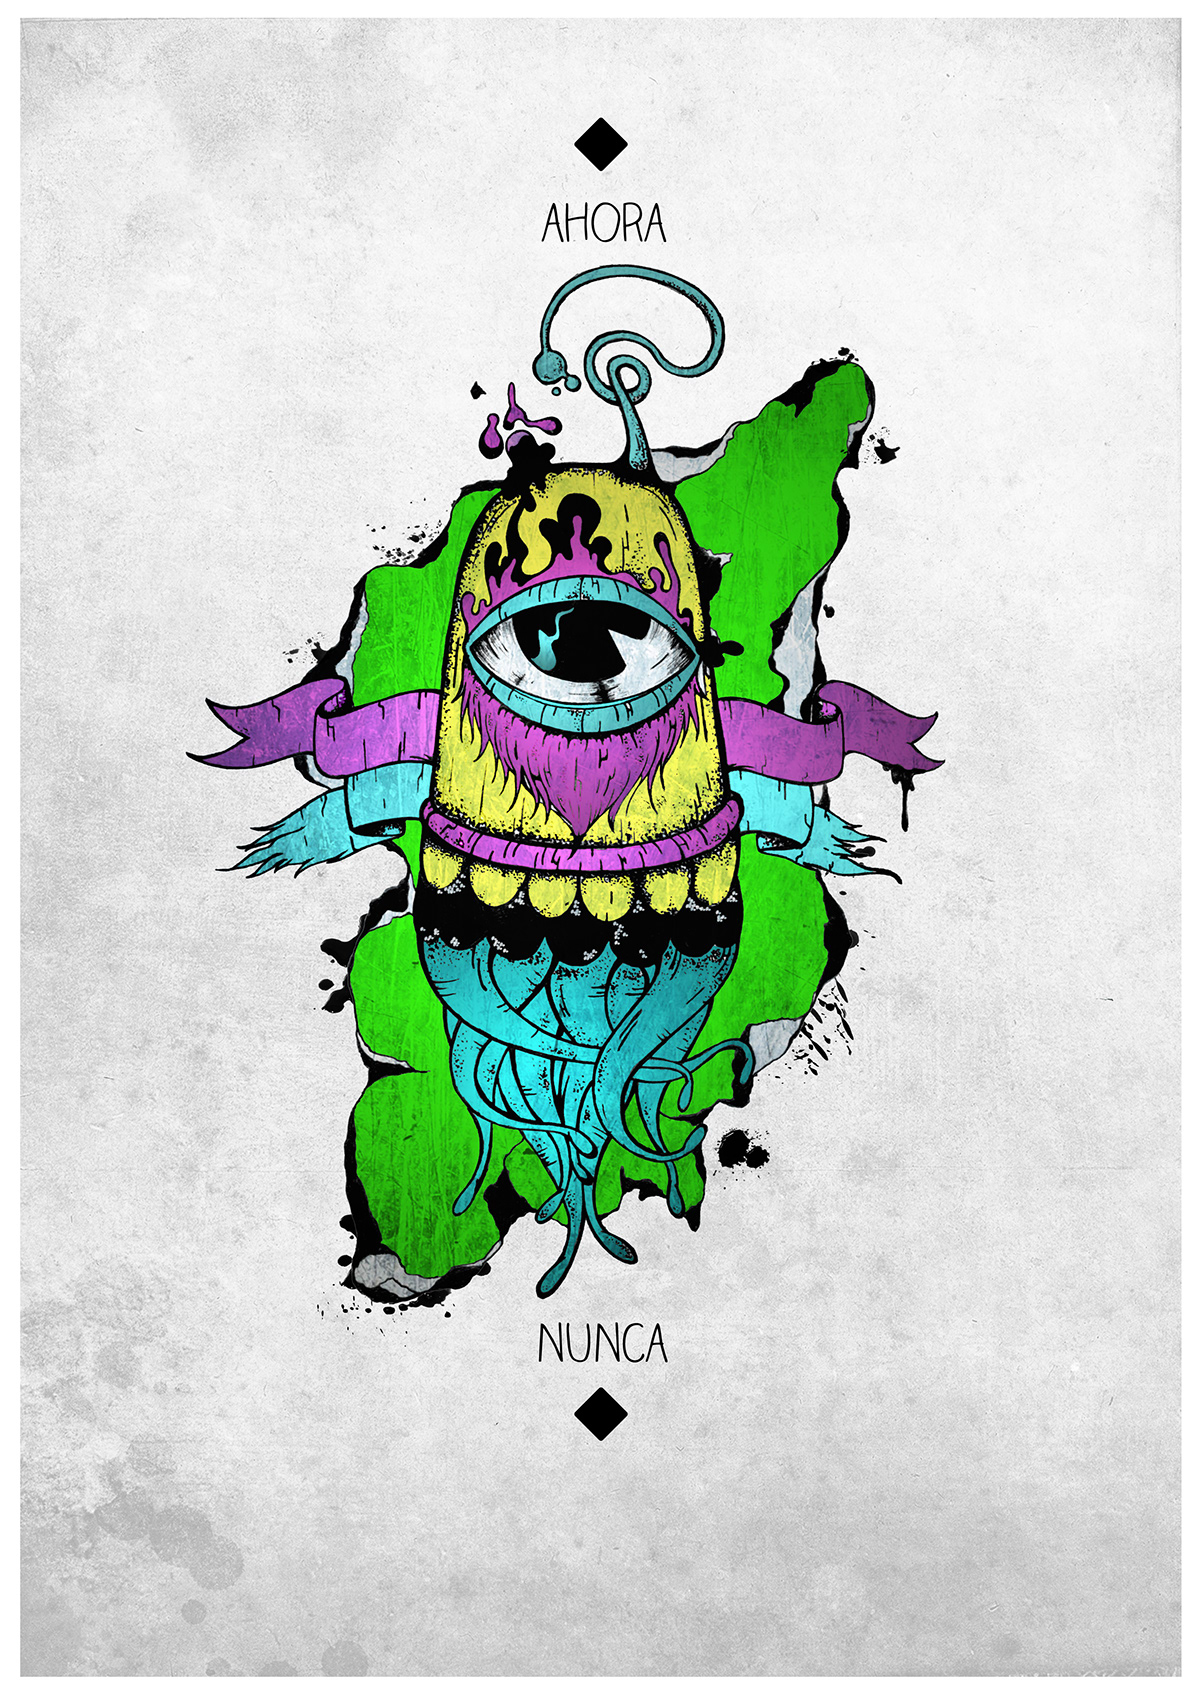 ahora nunca Monstruo monster pulpo octopus poster dibujo diseño never colours tentaculos afiche art eyes